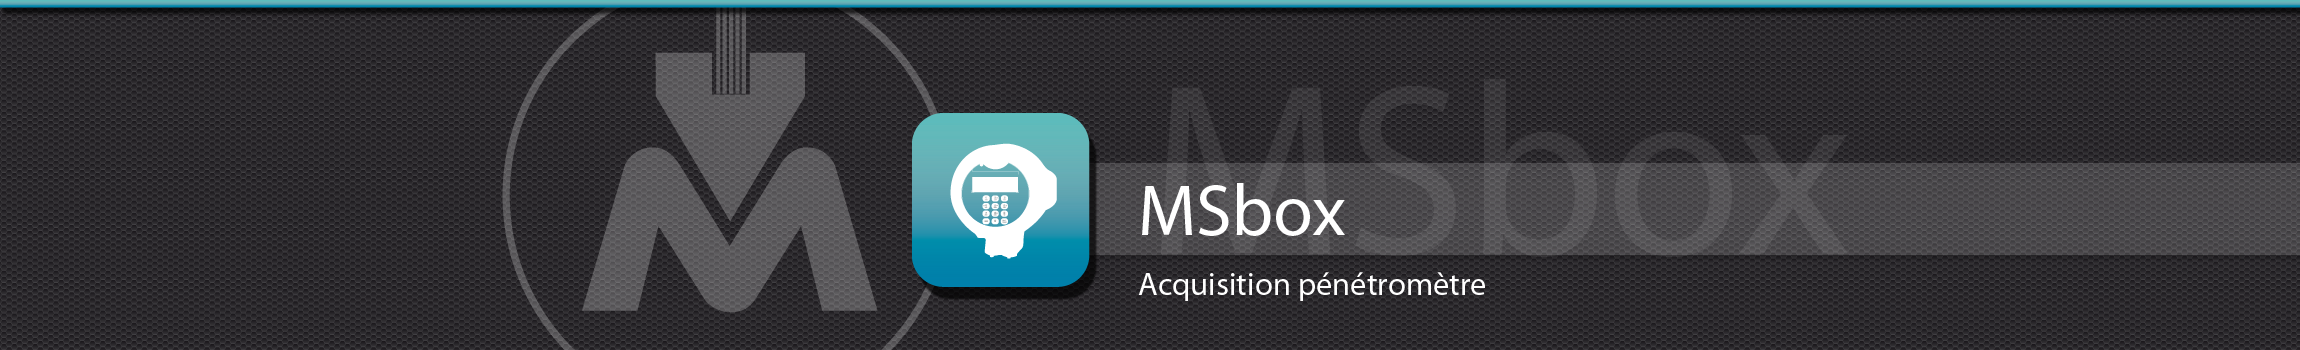 Acquisition pénétromètre MSbox